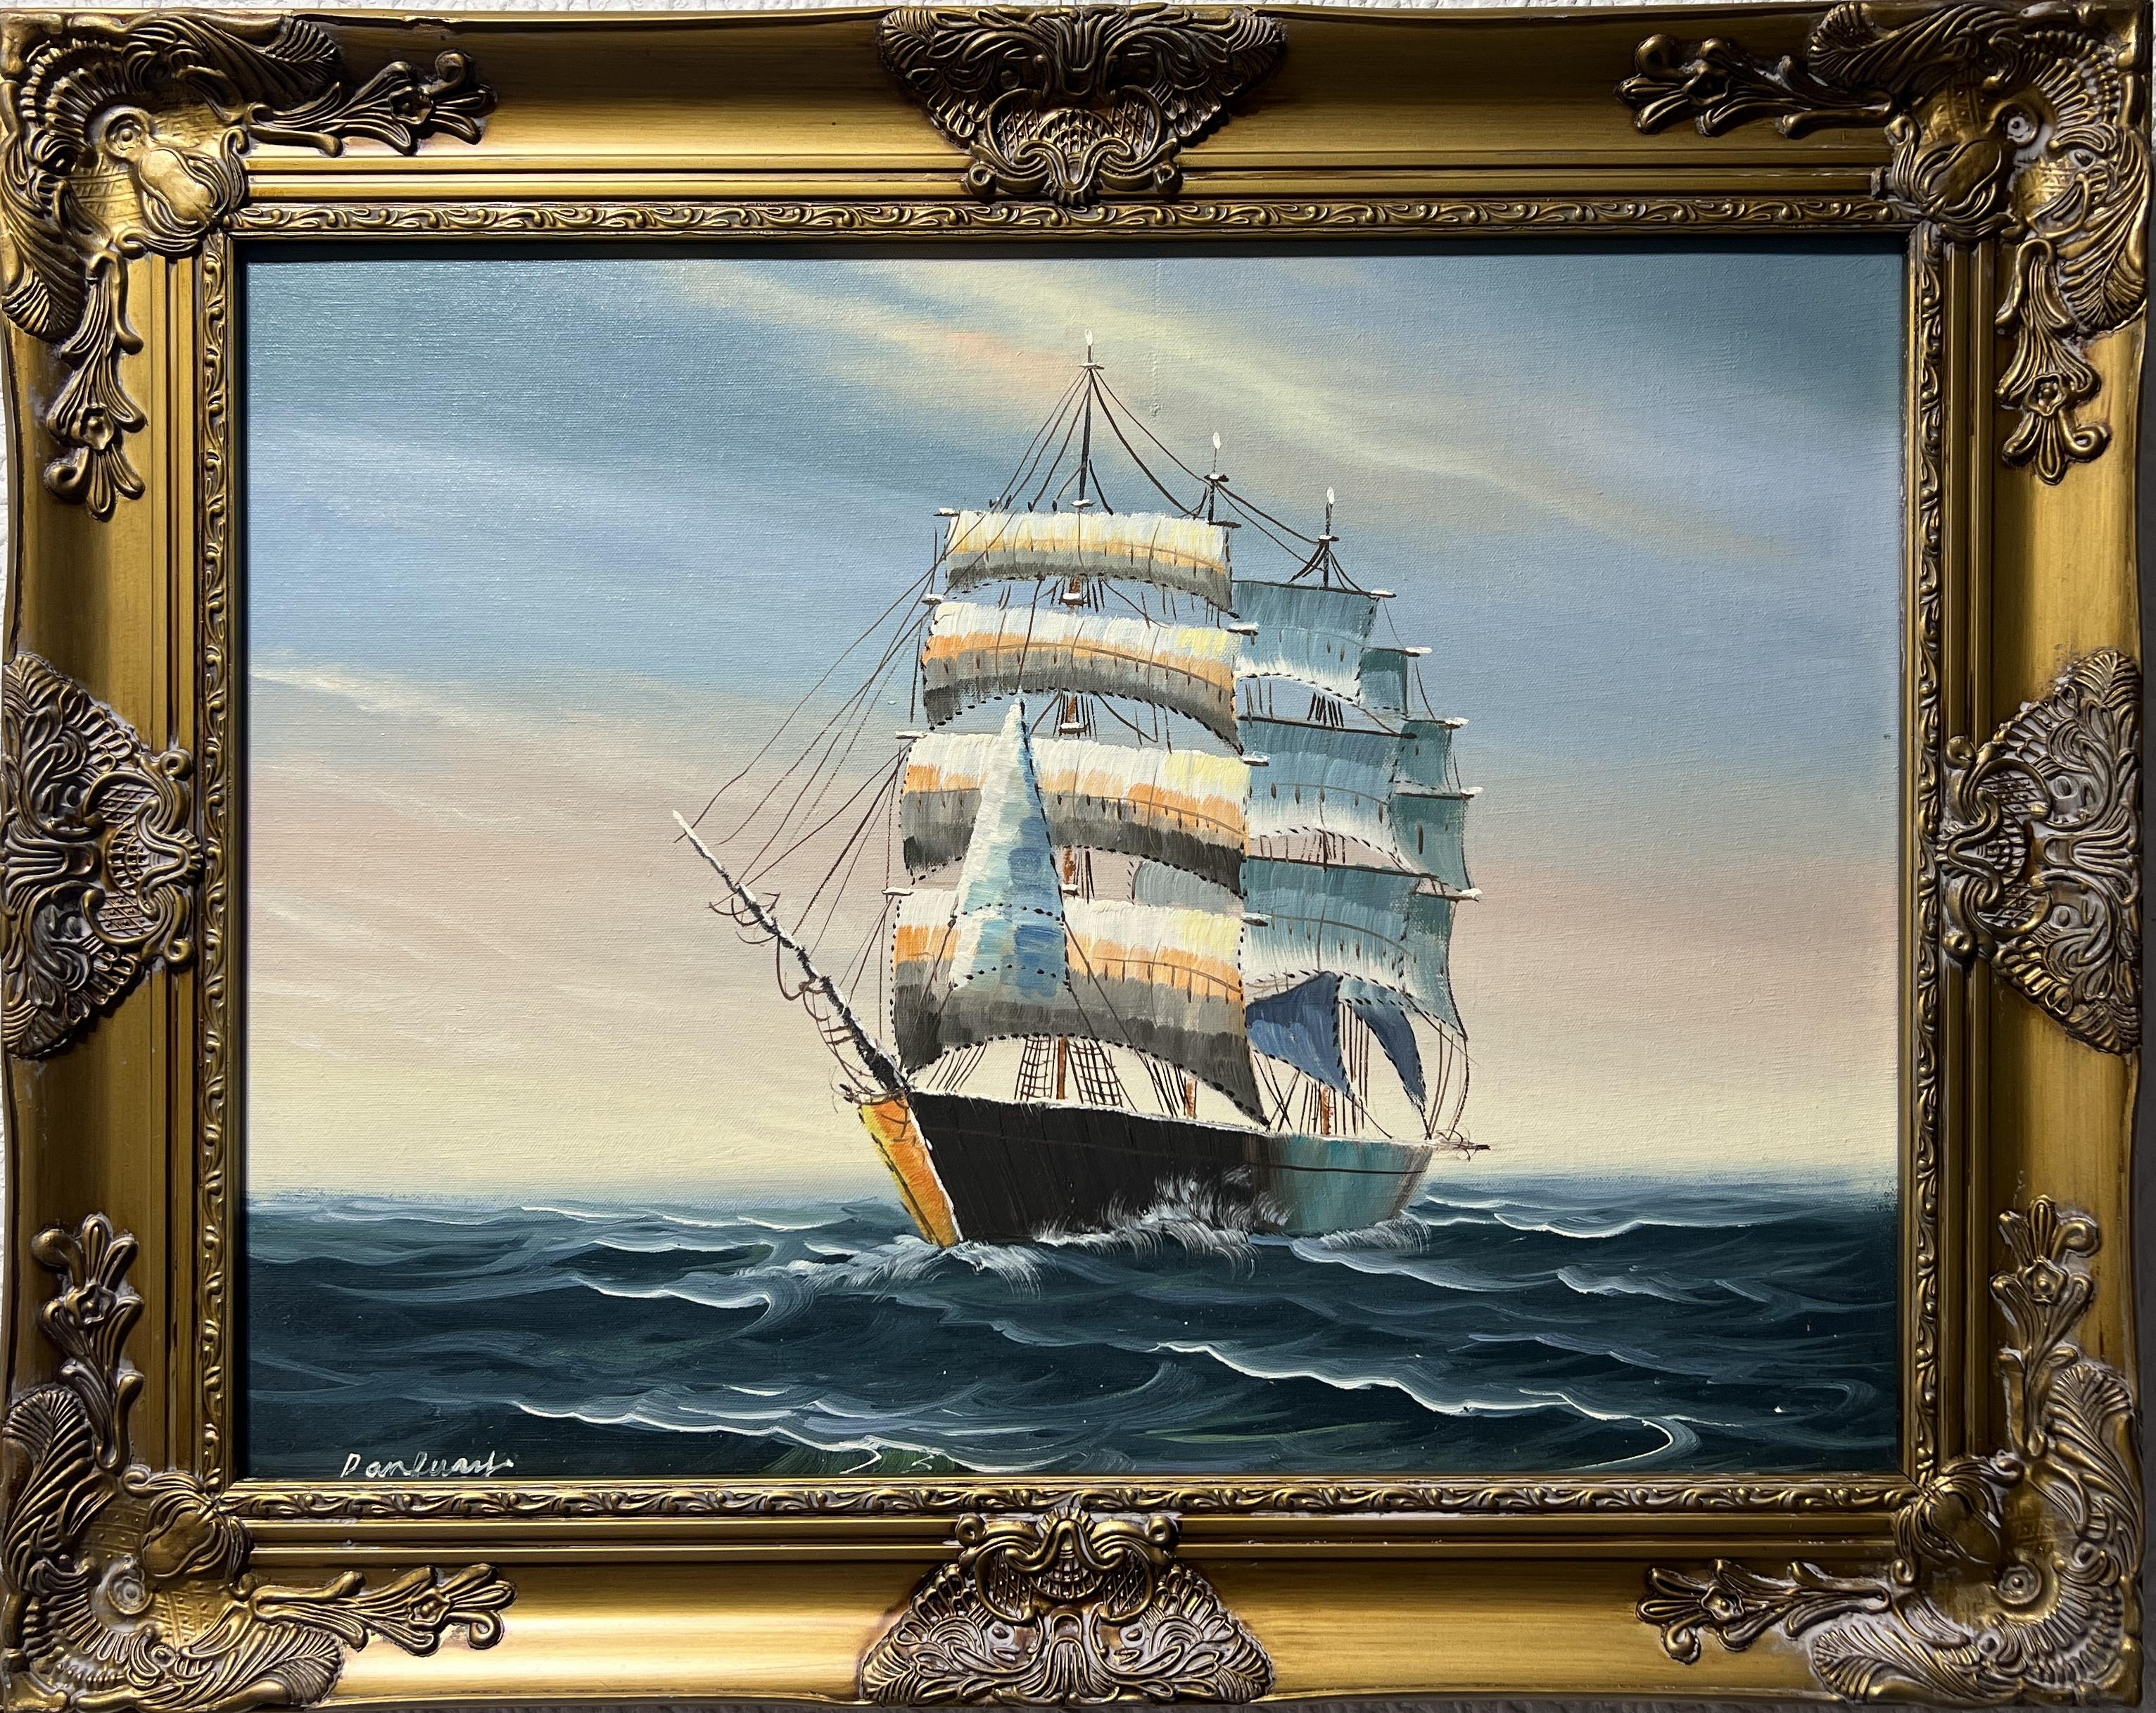 Landscape Painting Unknown - Peinture originale à l'huile sur toile, paysage marin, bateau à voile, signée, cadre doré